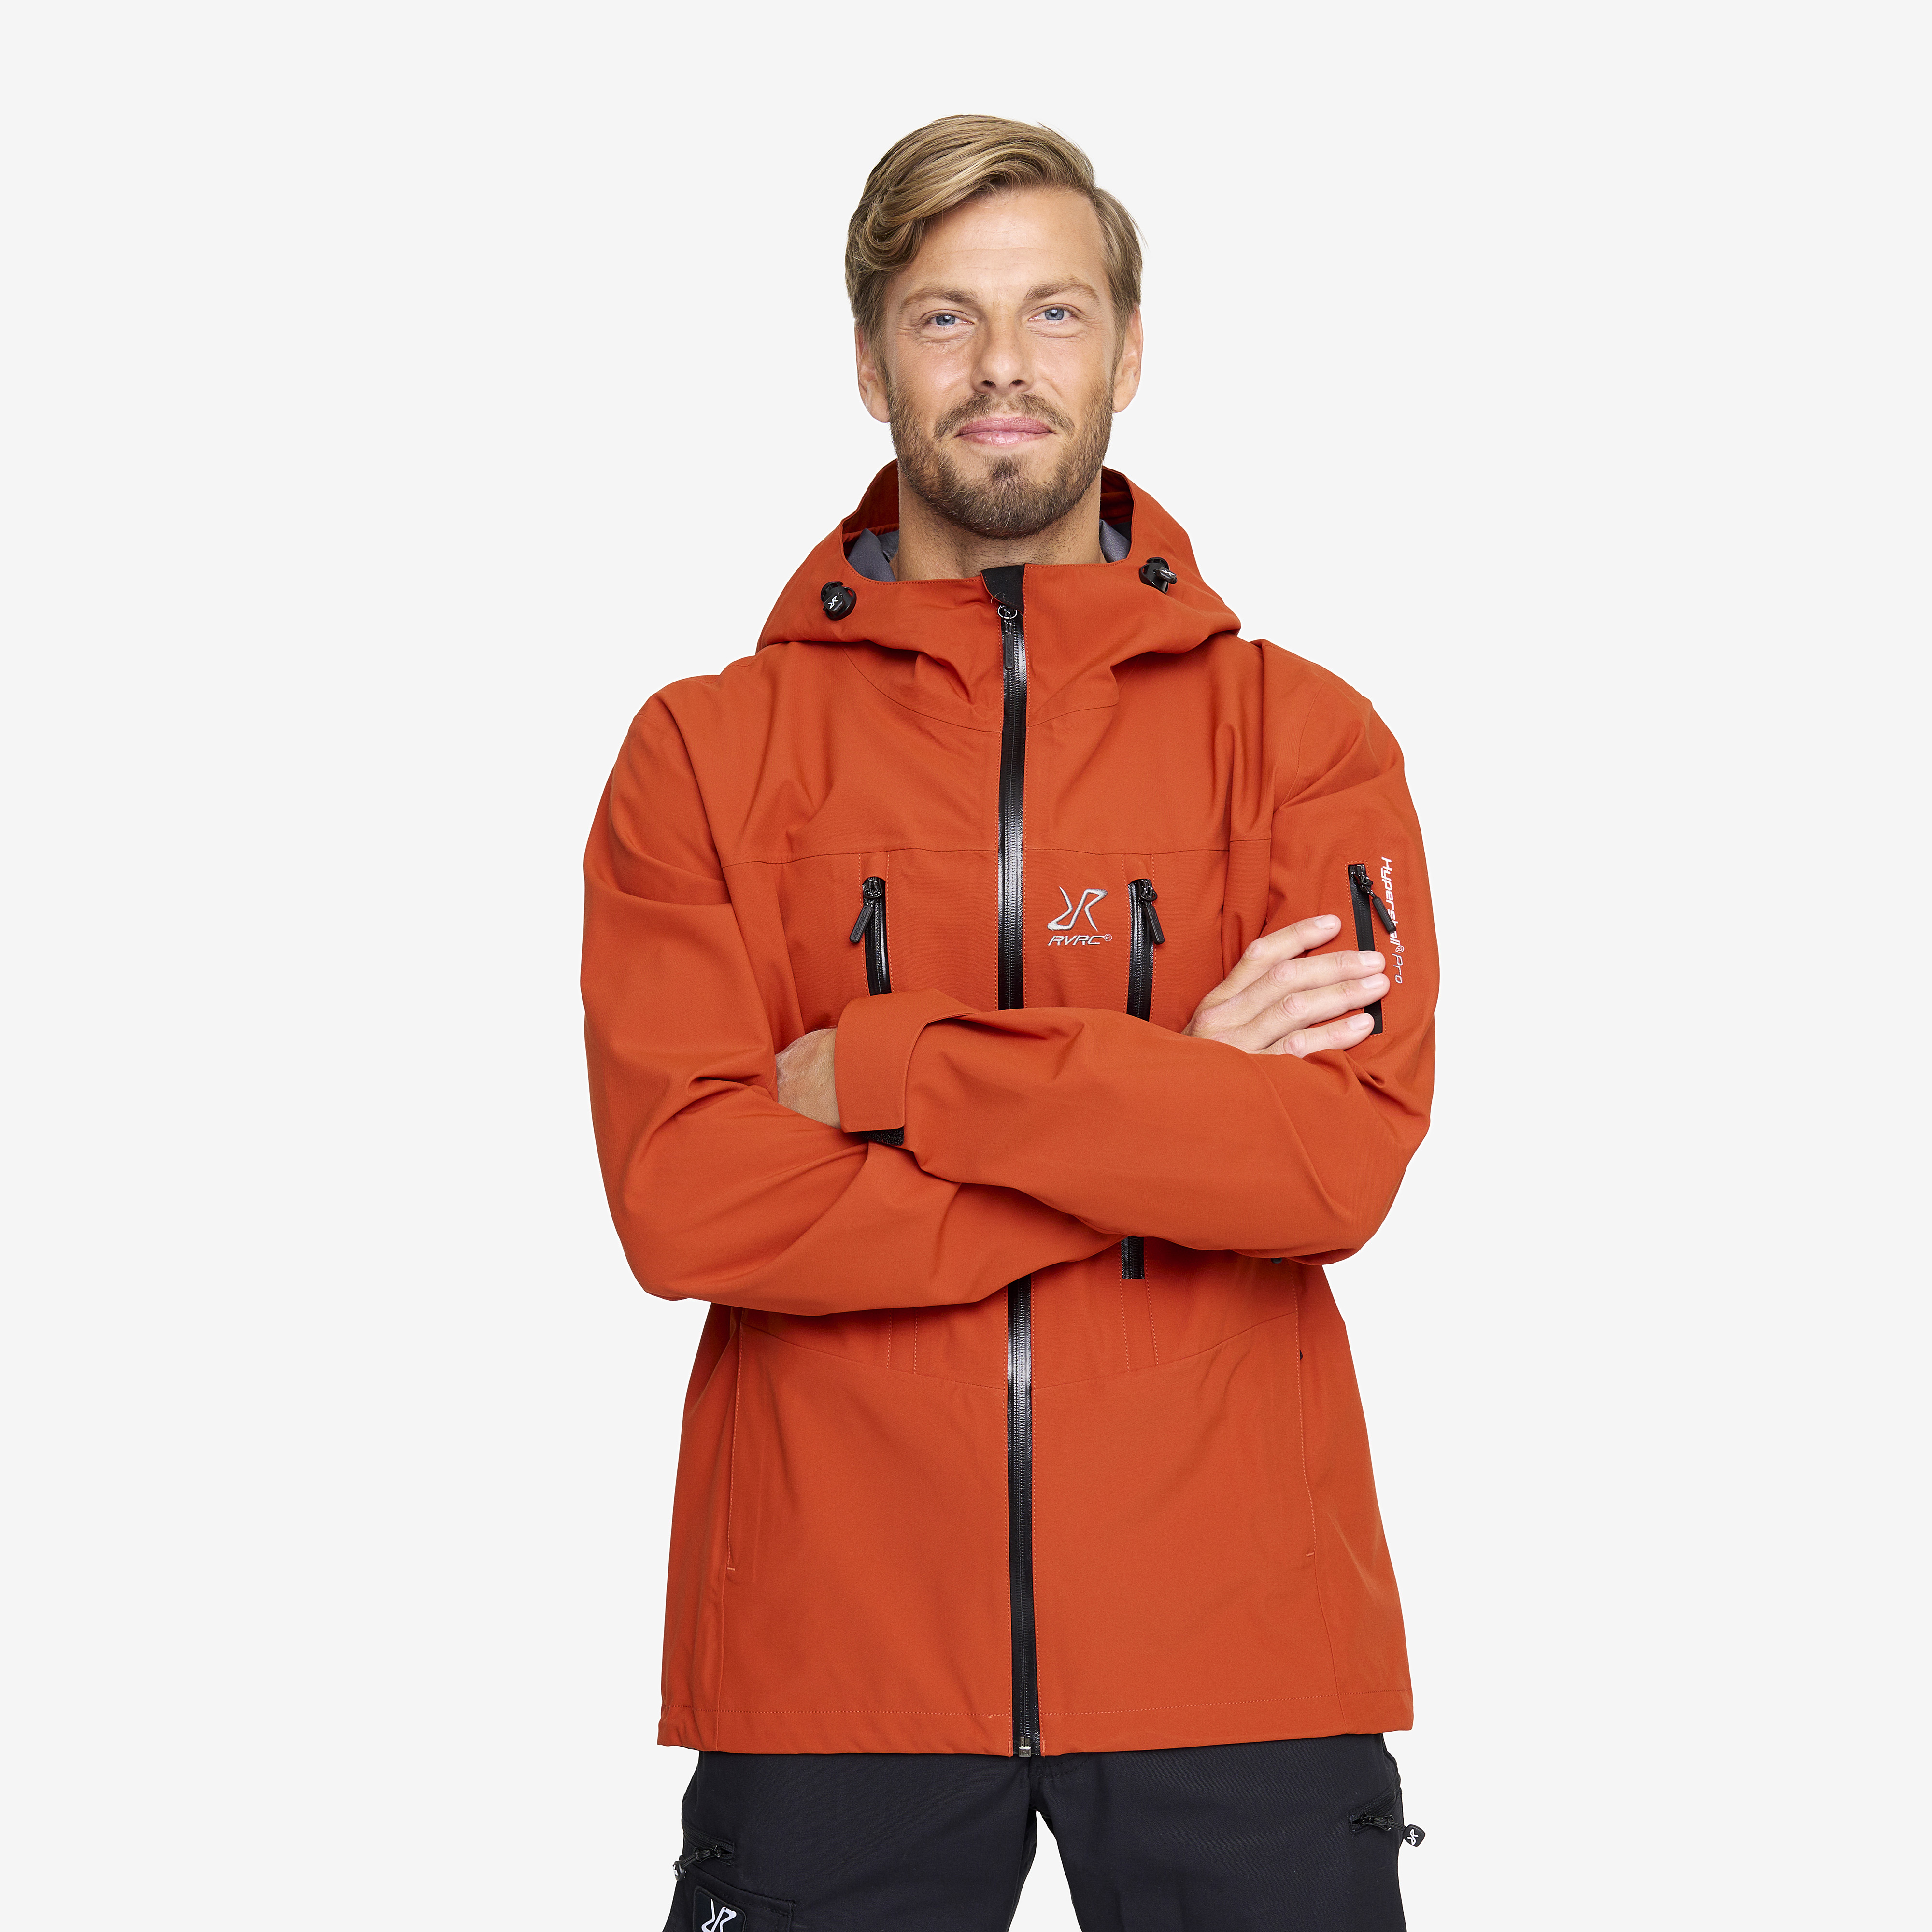 Whisper rain jacket for men in orange